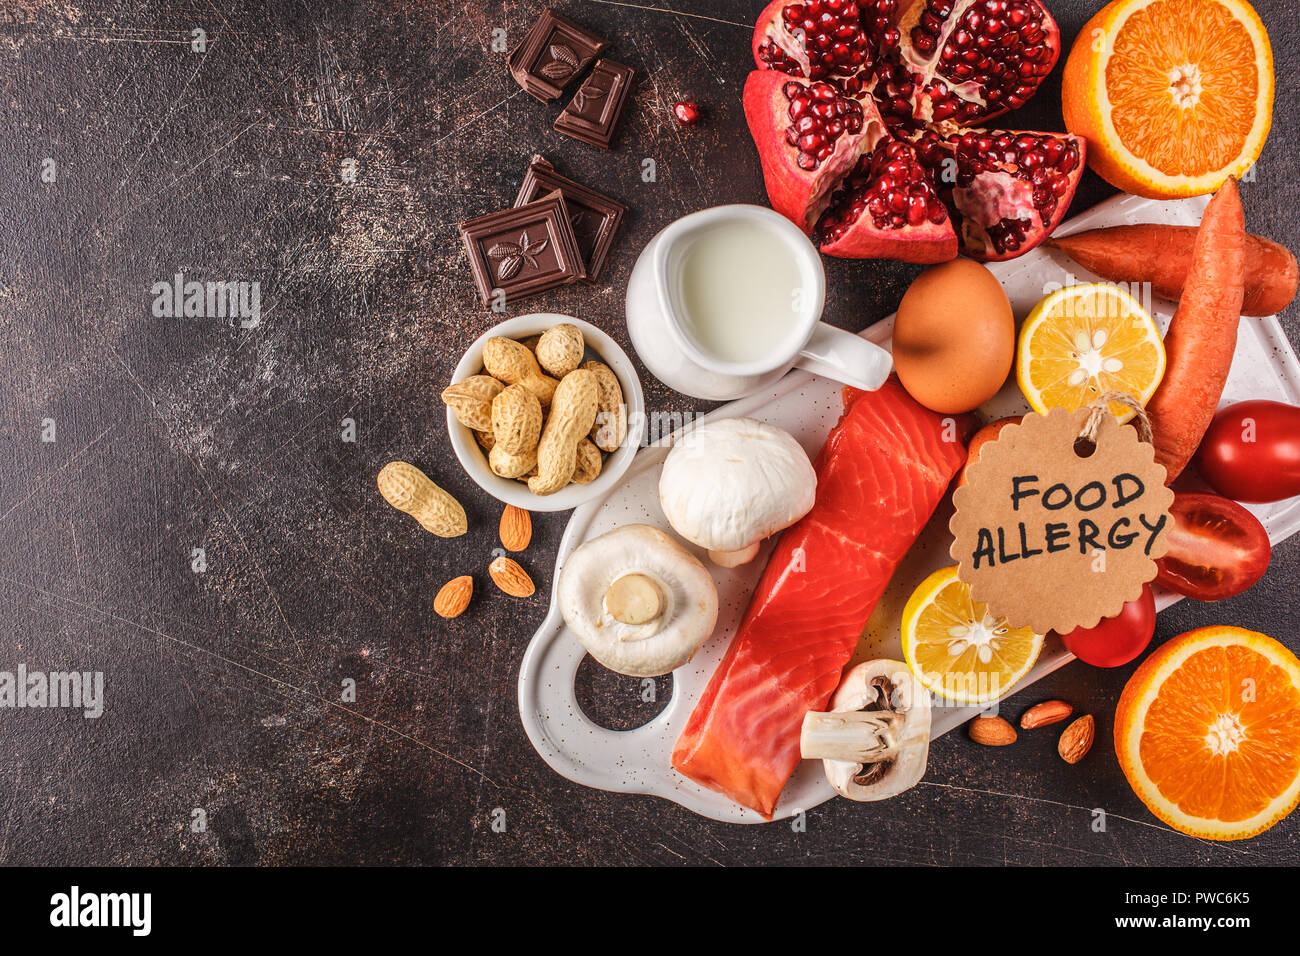 Allergie essen Konzept. Allergien, Fisch, Eier, Zitrusfrüchte, Schokolade, Pilze und Nüsse. Gesundheit und Medizin in Essen. Dunkler Hintergrund, Ansicht von oben, c Stockfoto